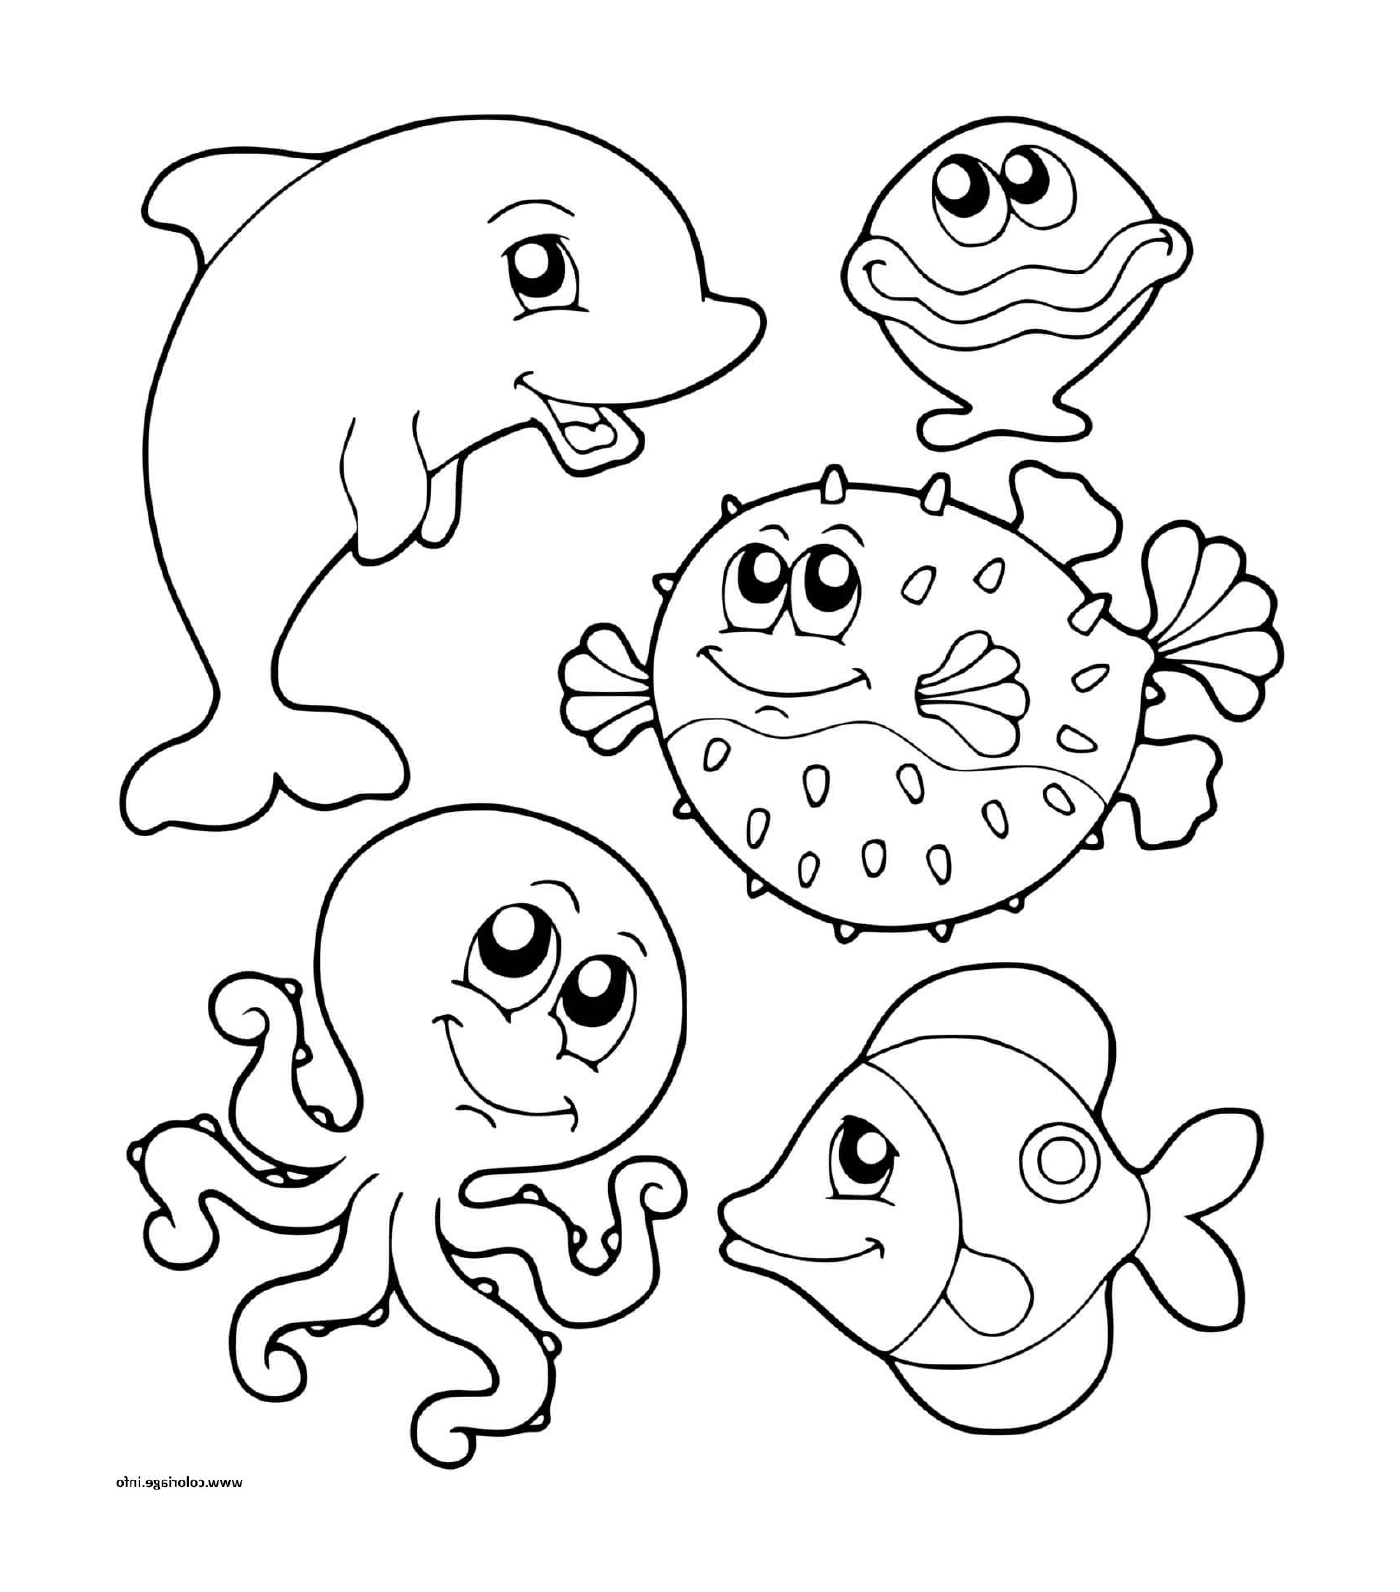  जल में समुद्री जानवरों का एक समूह 